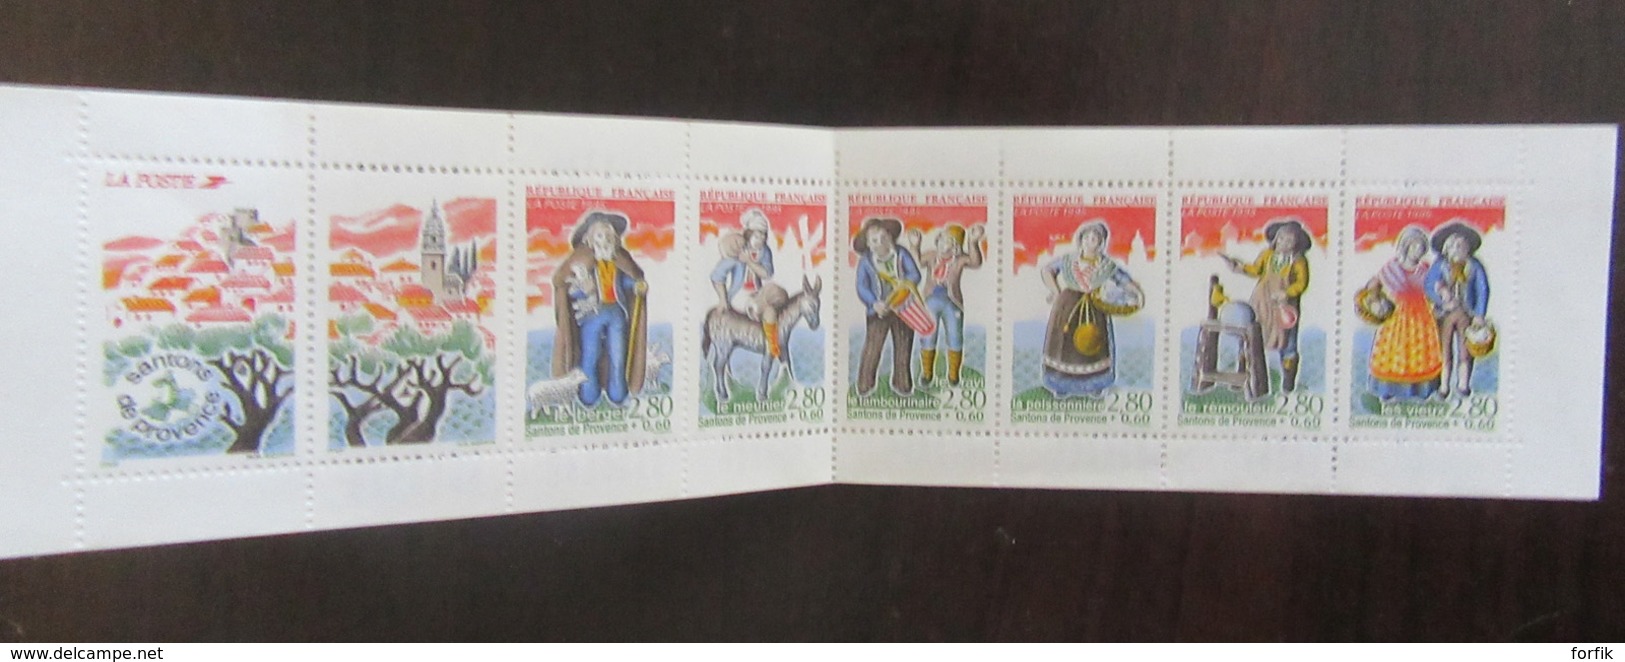 France - Stock de timbres modernes neufs pour affranchissement dont blocs et 1 carnet - Faciale 407,03F soit 62,05 €